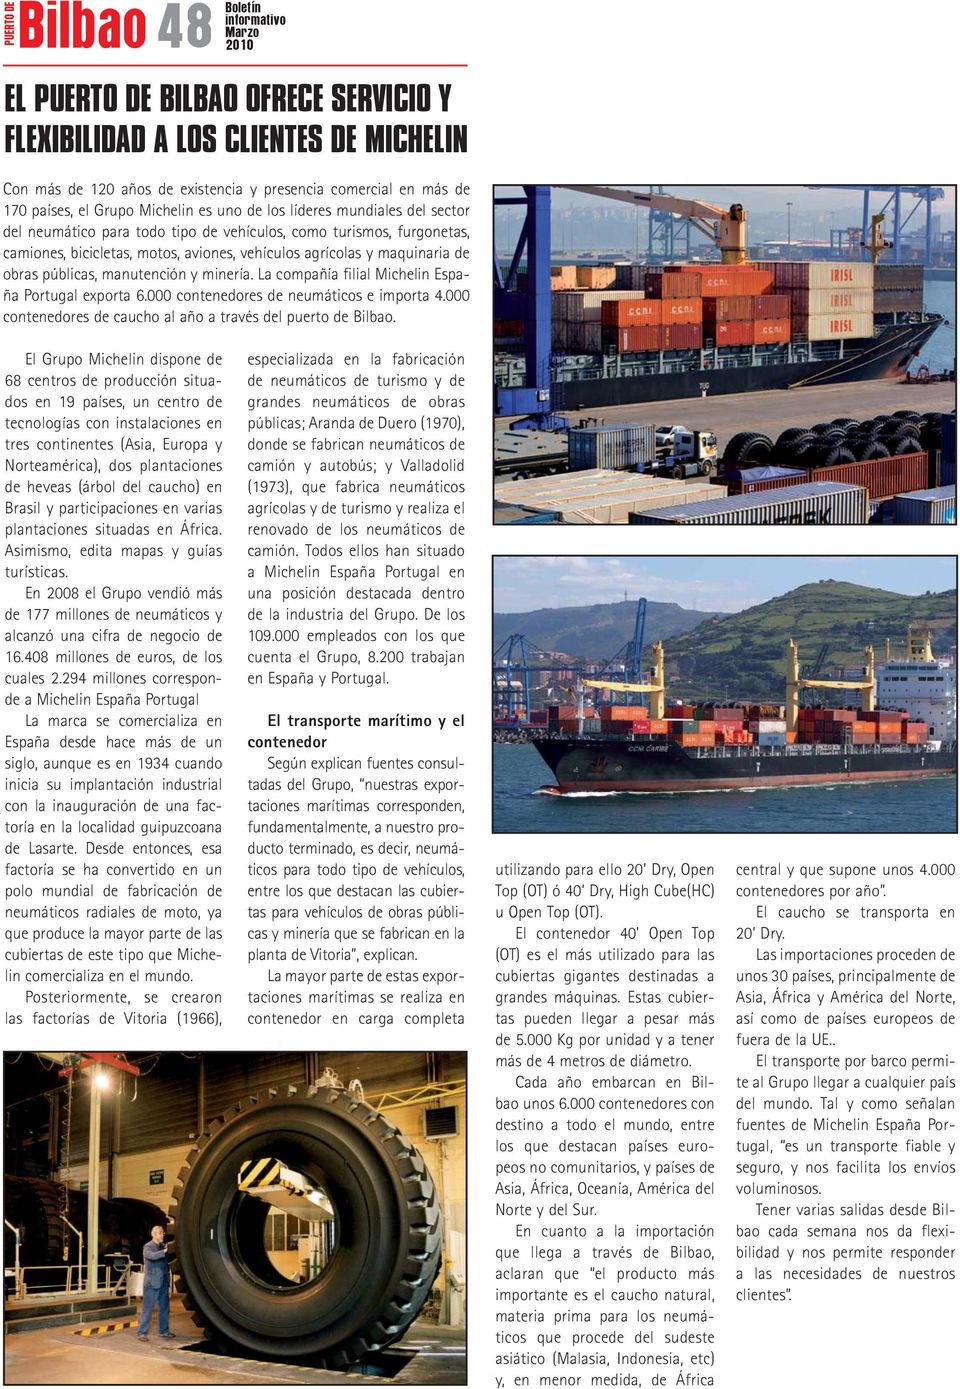 manutención y minería. La compañía filial Michelin España Portugal exporta 6.000 contenedores de neumáticos e importa 4.000 contenedores de caucho al año a través del puerto de Bilbao.